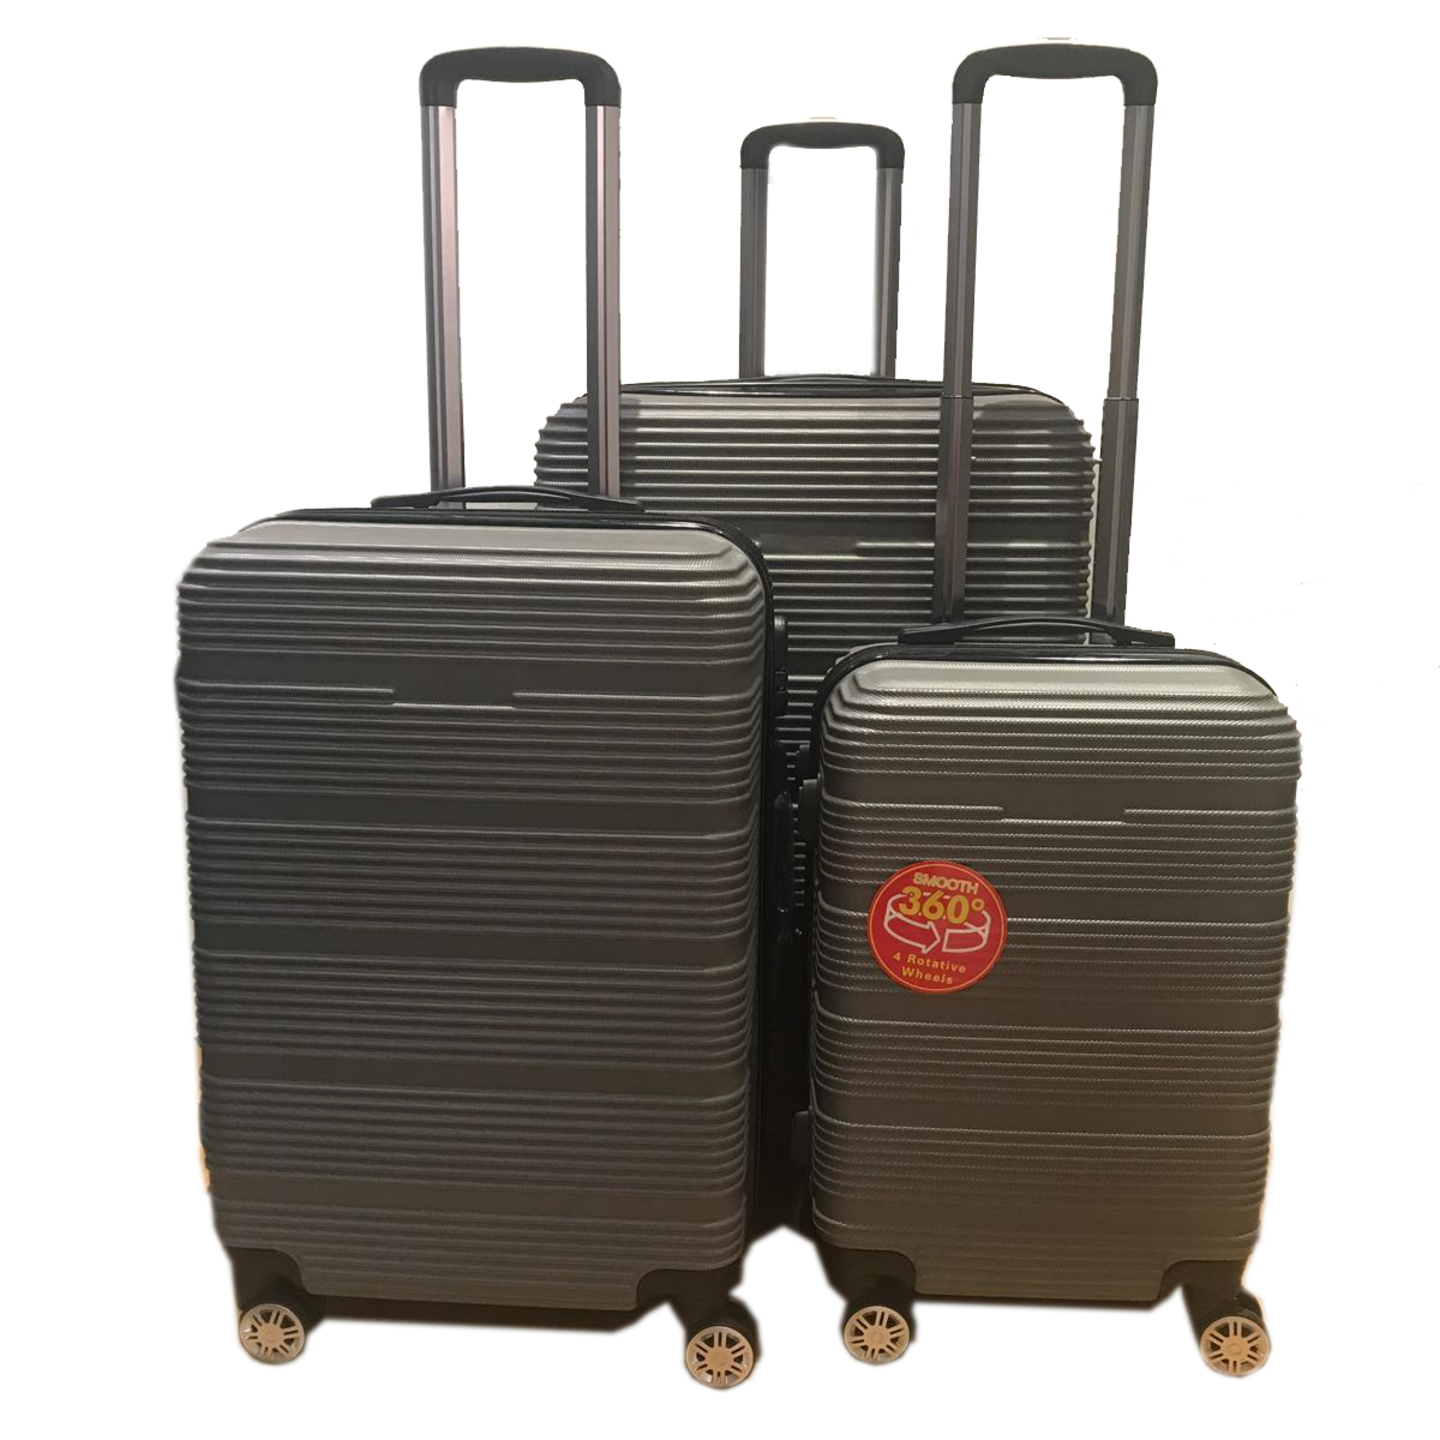 SGT-02 Elegant Hard Box Luggage - Grey  20 inch, 24 inch, 28 inch